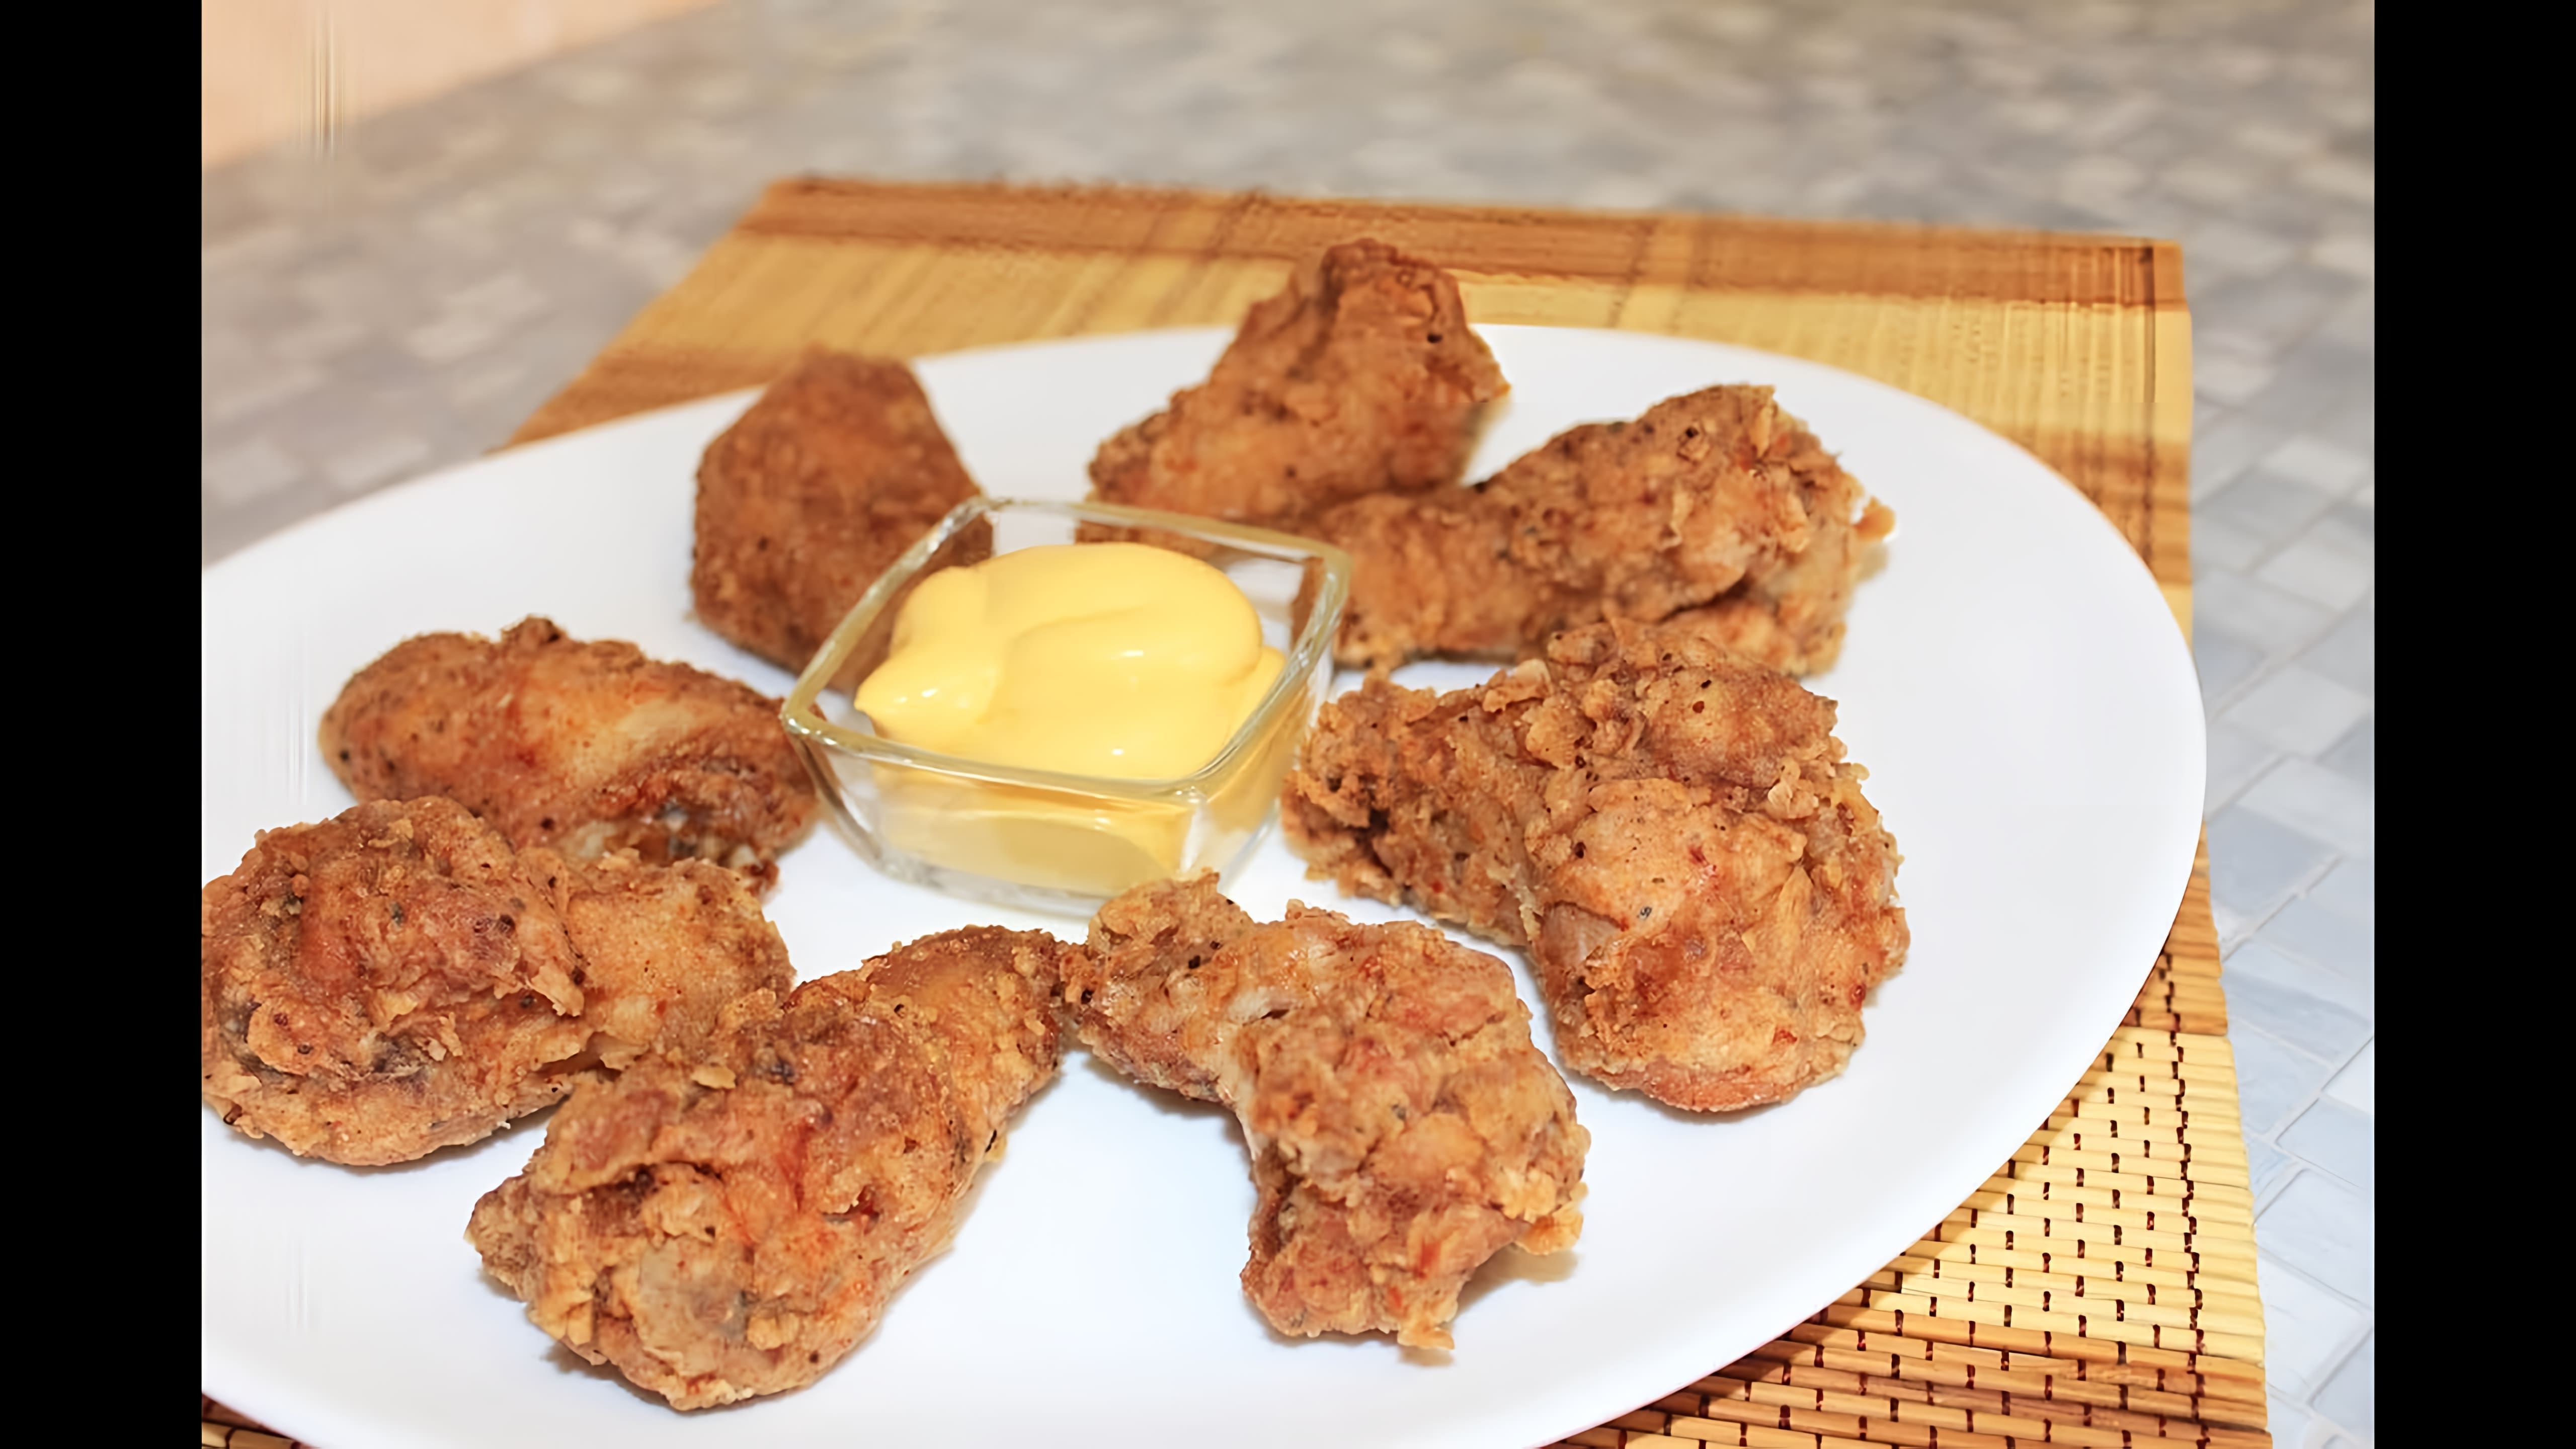 В этом видео демонстрируется рецепт приготовления острых крылышек KFC в домашних условиях